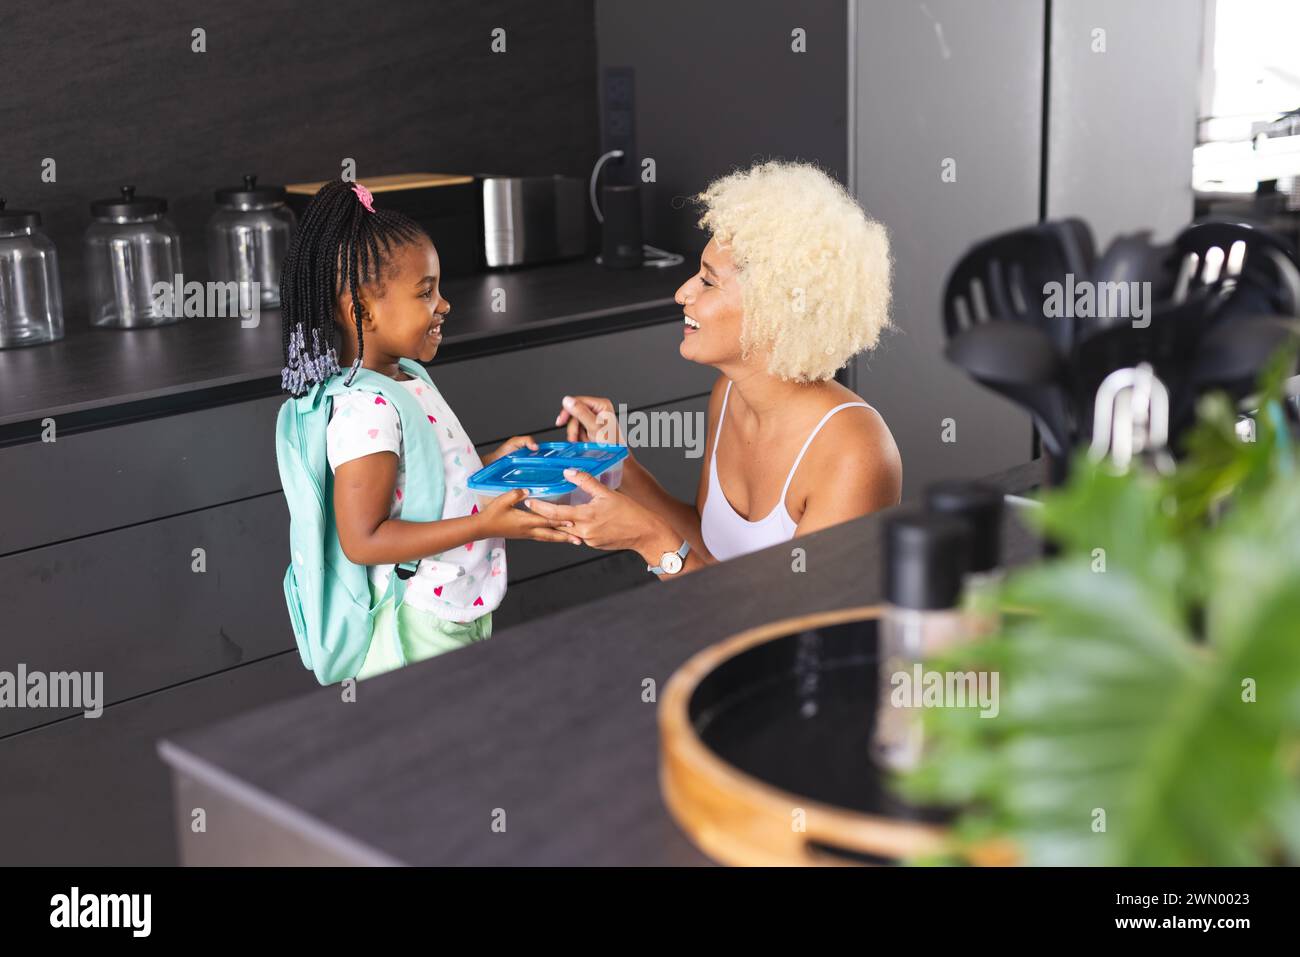 Une jeune mère biraciale aux cheveux blonds courts tend une boîte à lunch bleue à une fille afro-américaine Banque D'Images